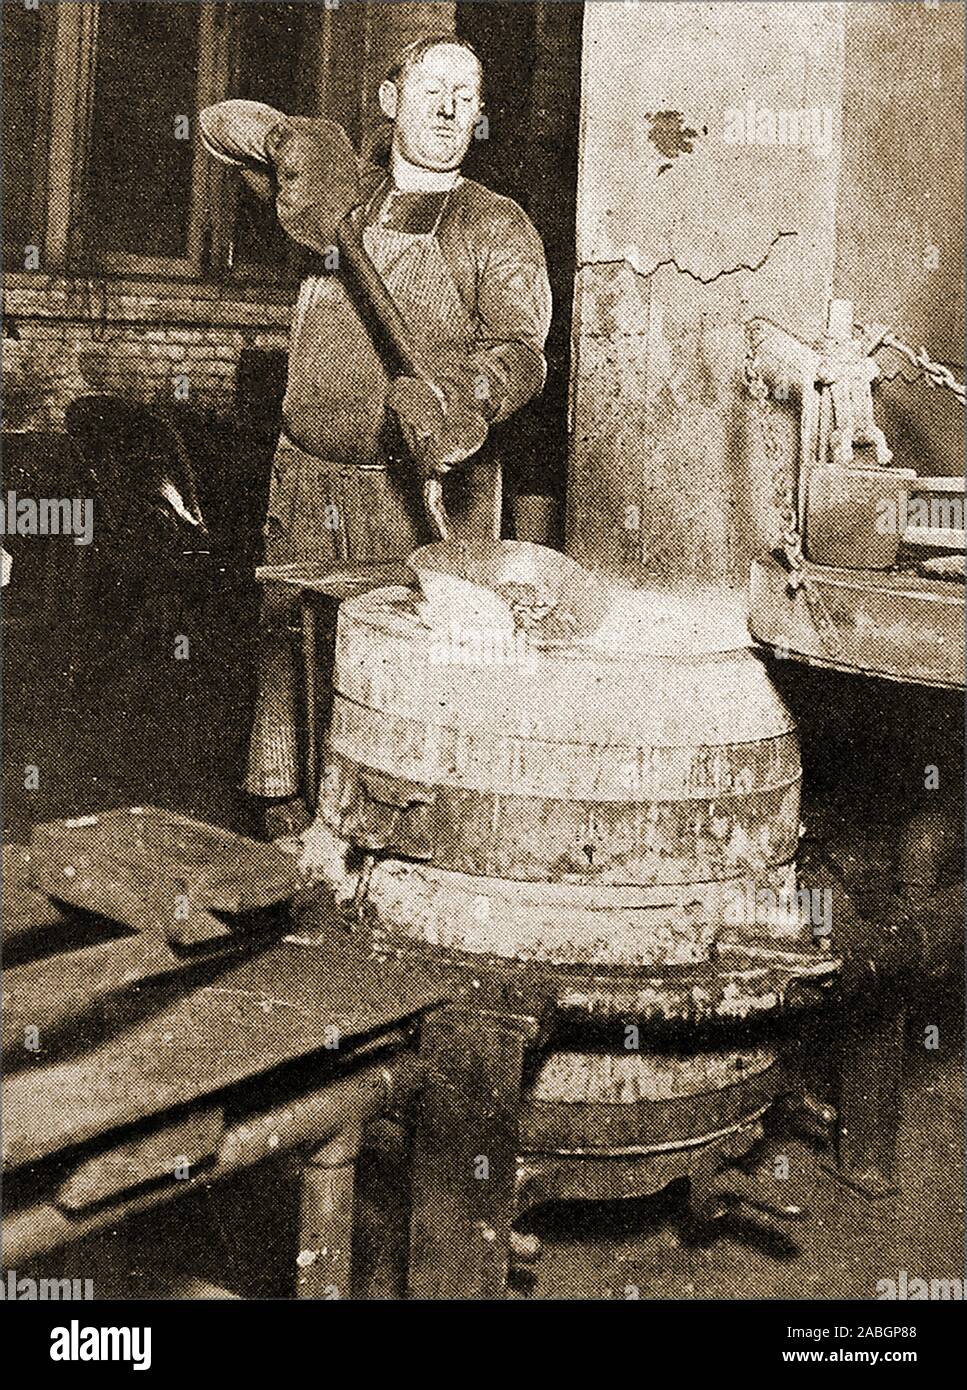 Eine seltene und ungewöhnliche historische Foto, einem Mitarbeiter der Bank in die 1940er Jahre manuell Einschmelzen ausländische Münzen in den Vereinigten Staaten Assay Office Gold und andere Edelmetalle zu extrahieren. Stockfoto